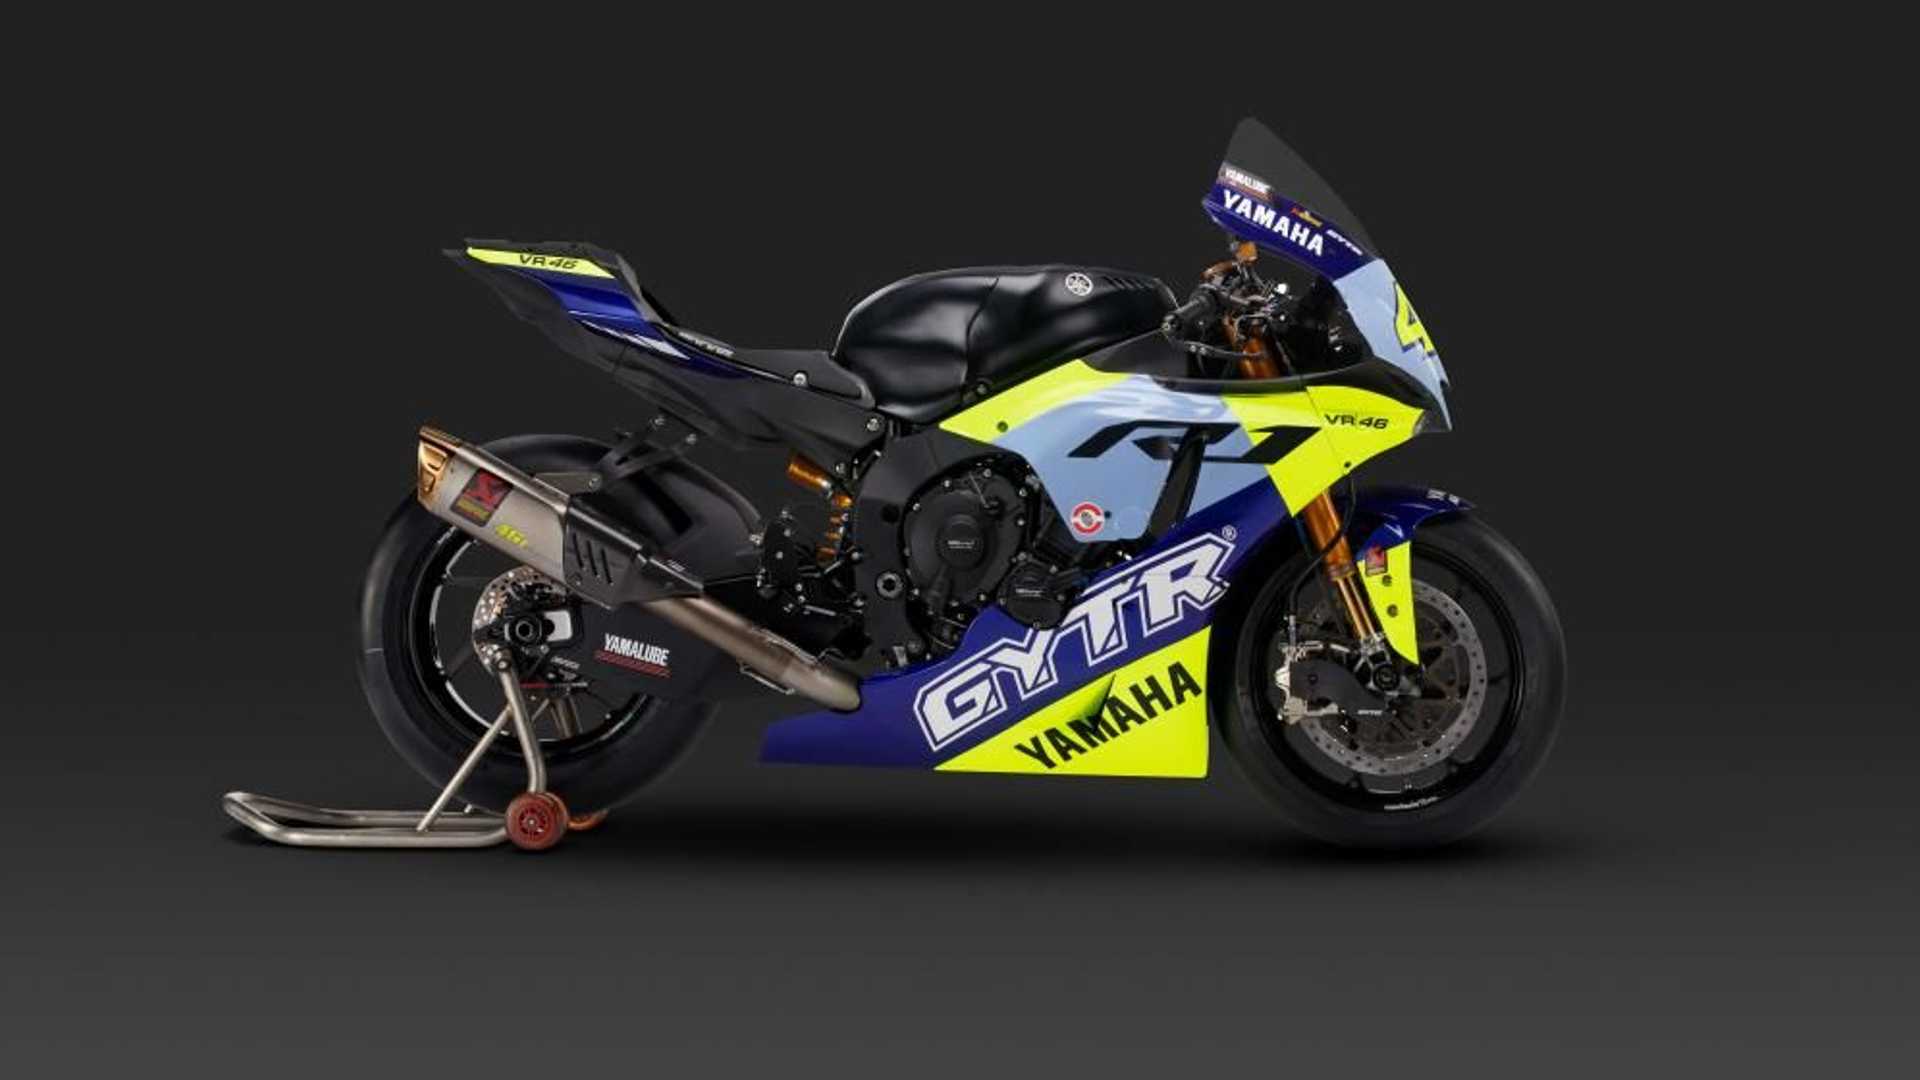 Yamaha YZR-R1 phiên bản đặc biệt vinh danh tay đua Valentino Rossi 2022-Yamaha-YZF-R1-GYTR-VR46-Tribute (15).jpg